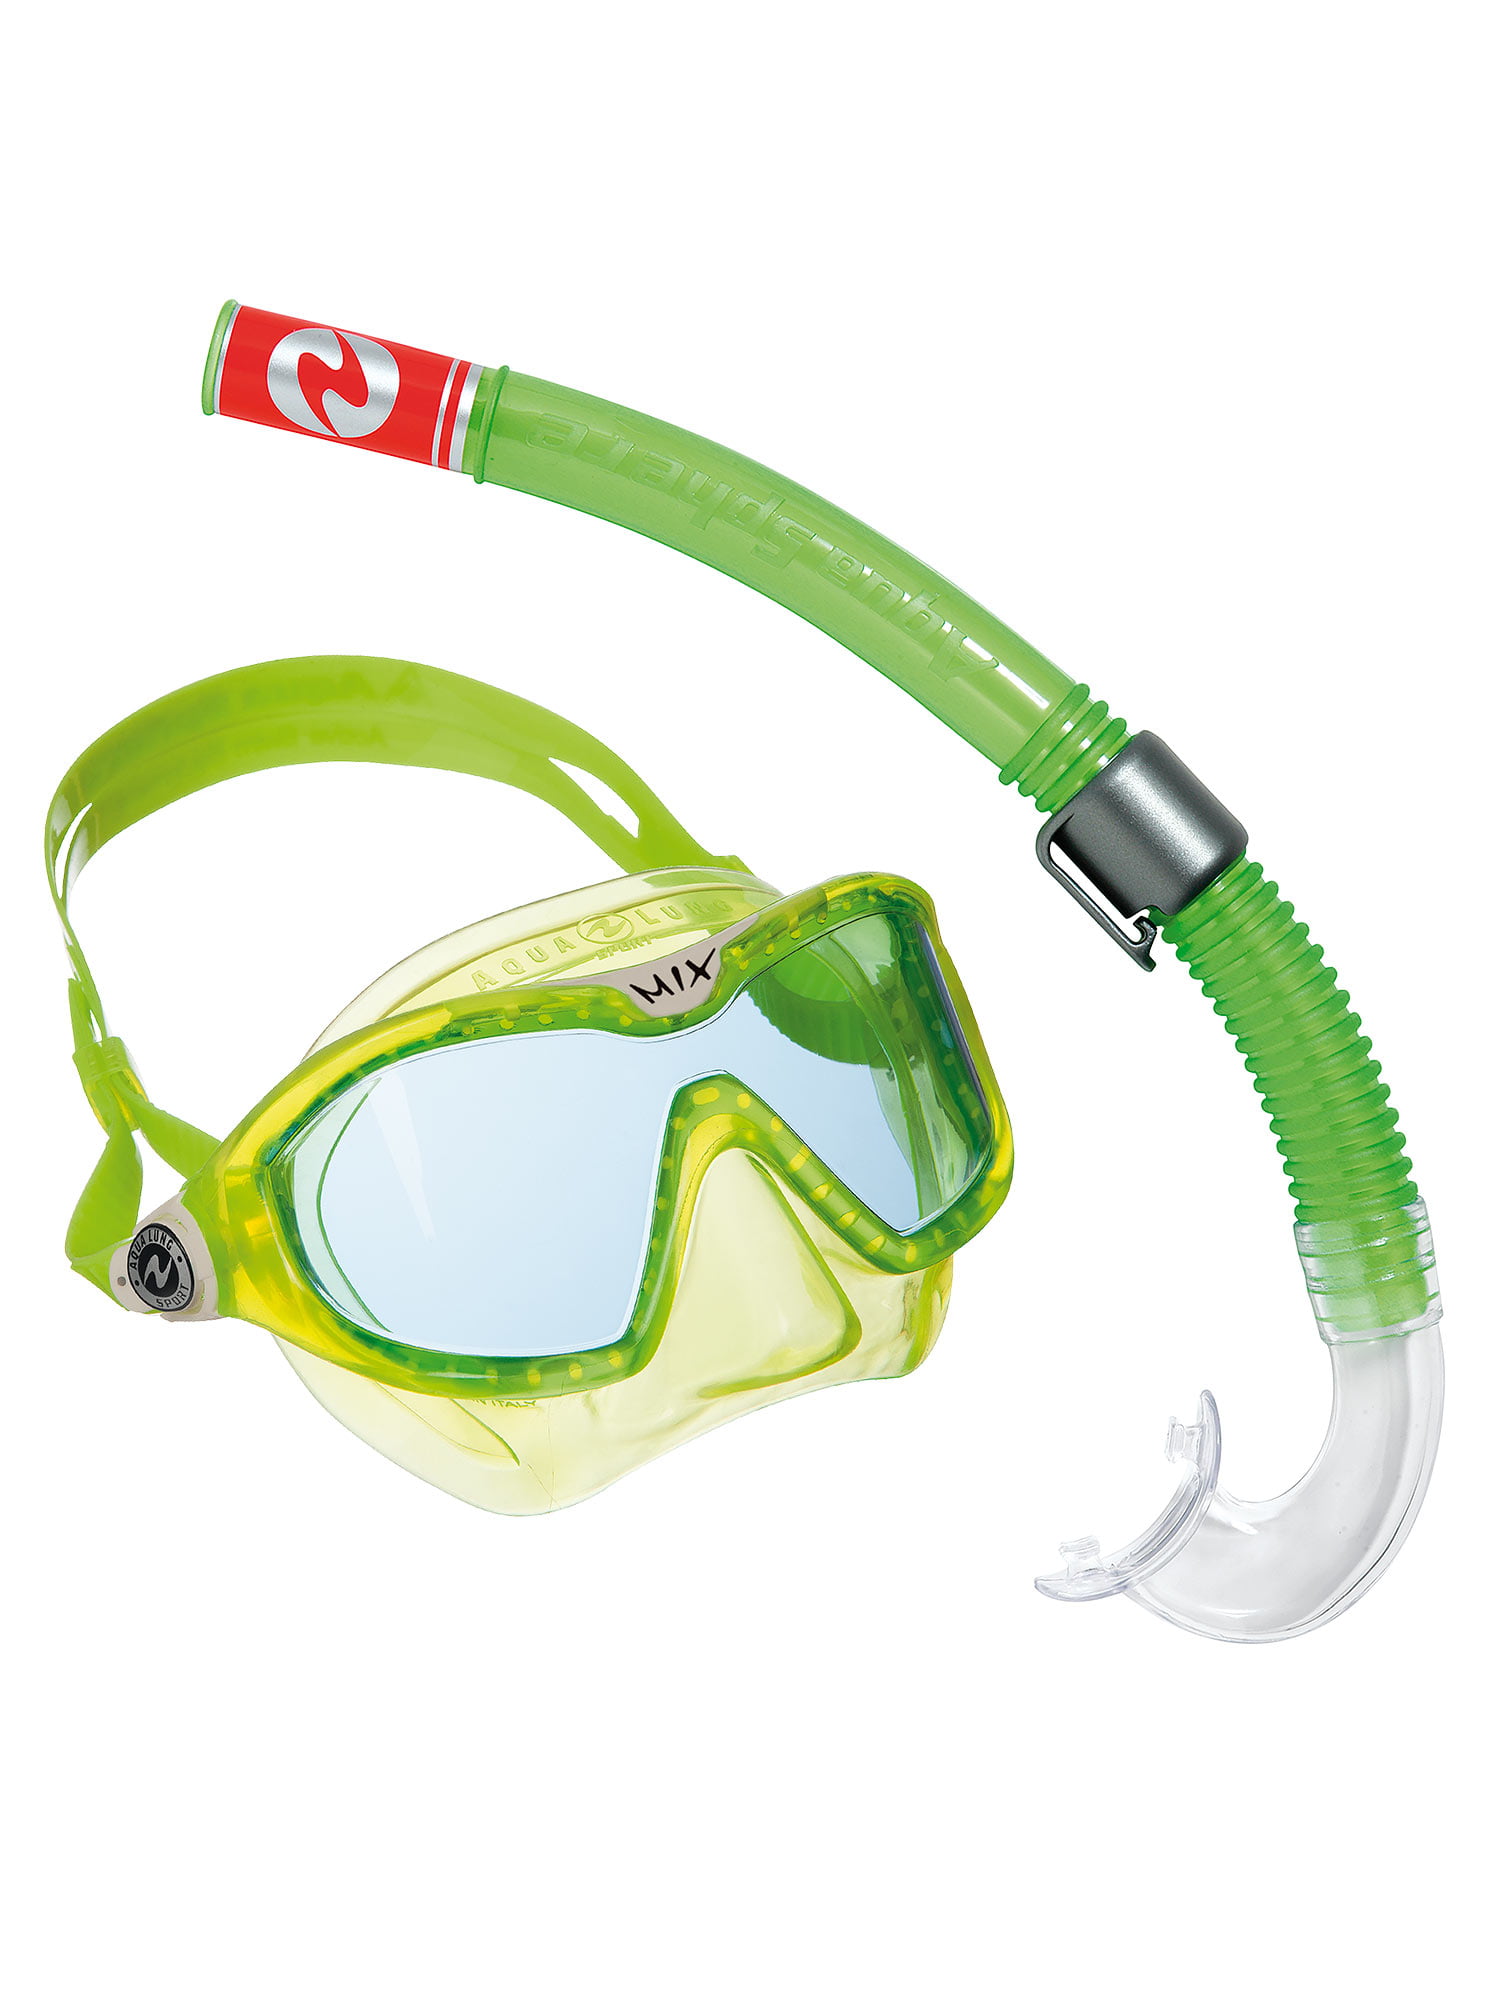 Маска плавательная. Маска Aqualung Sport Mix. Aqua lung Sport маска трубка. Детская маска для плавания Aqua lung. Комплект для подводного плавания детский sw1705107.